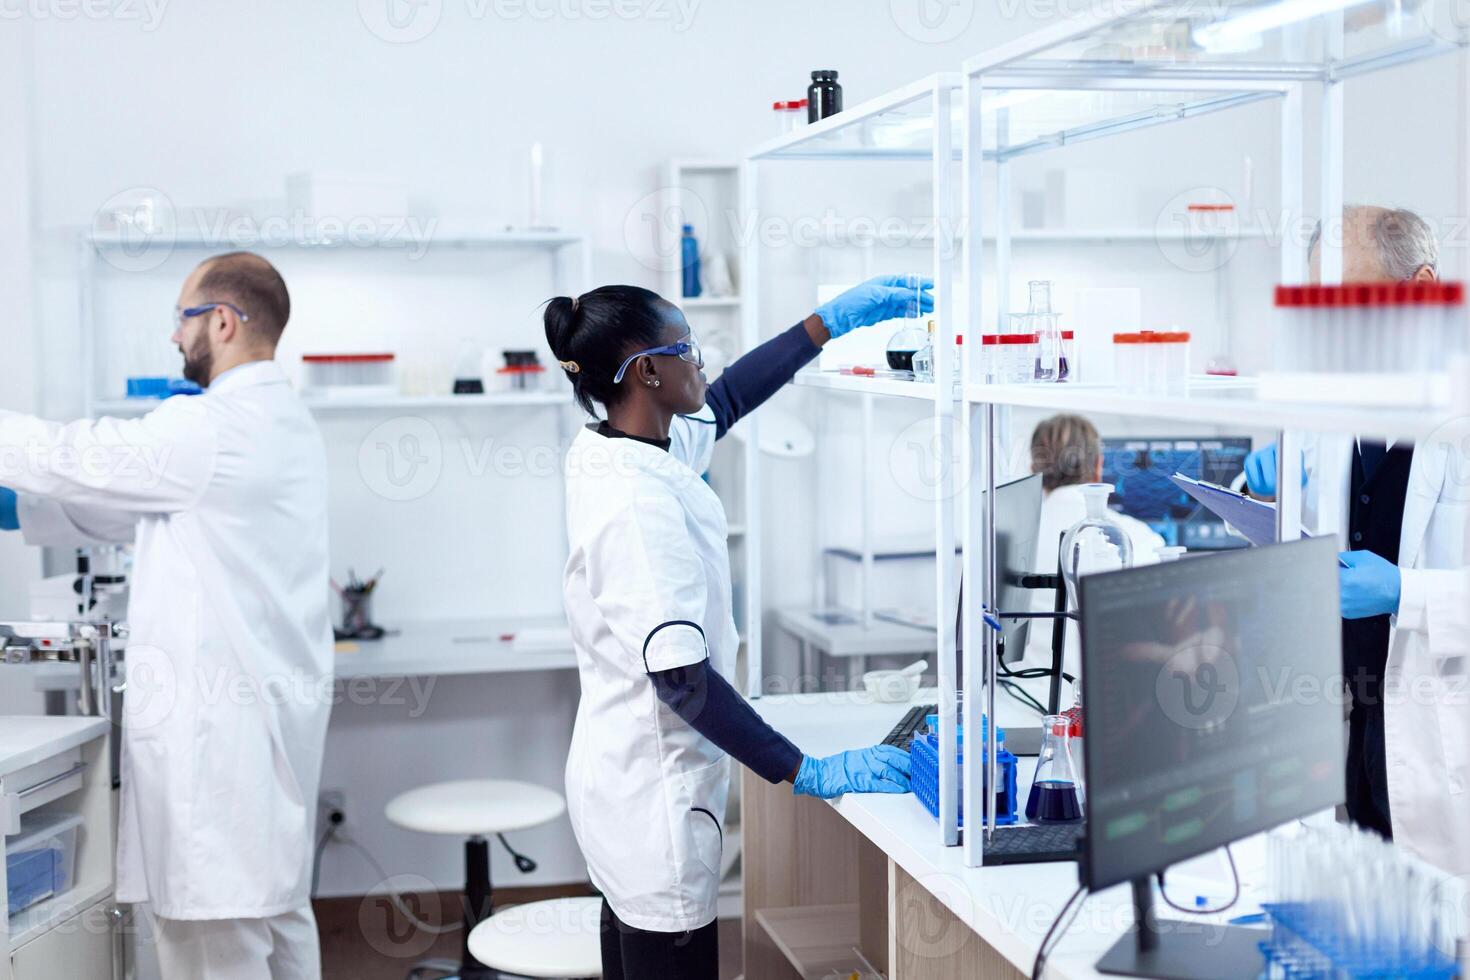 afrikansk i bioteknik laboratorium nå för glas flaska från hylla. multietnisk team av forskare arbetssätt i mikrobiologi labb testning lösning för medicinsk ändamål. foto